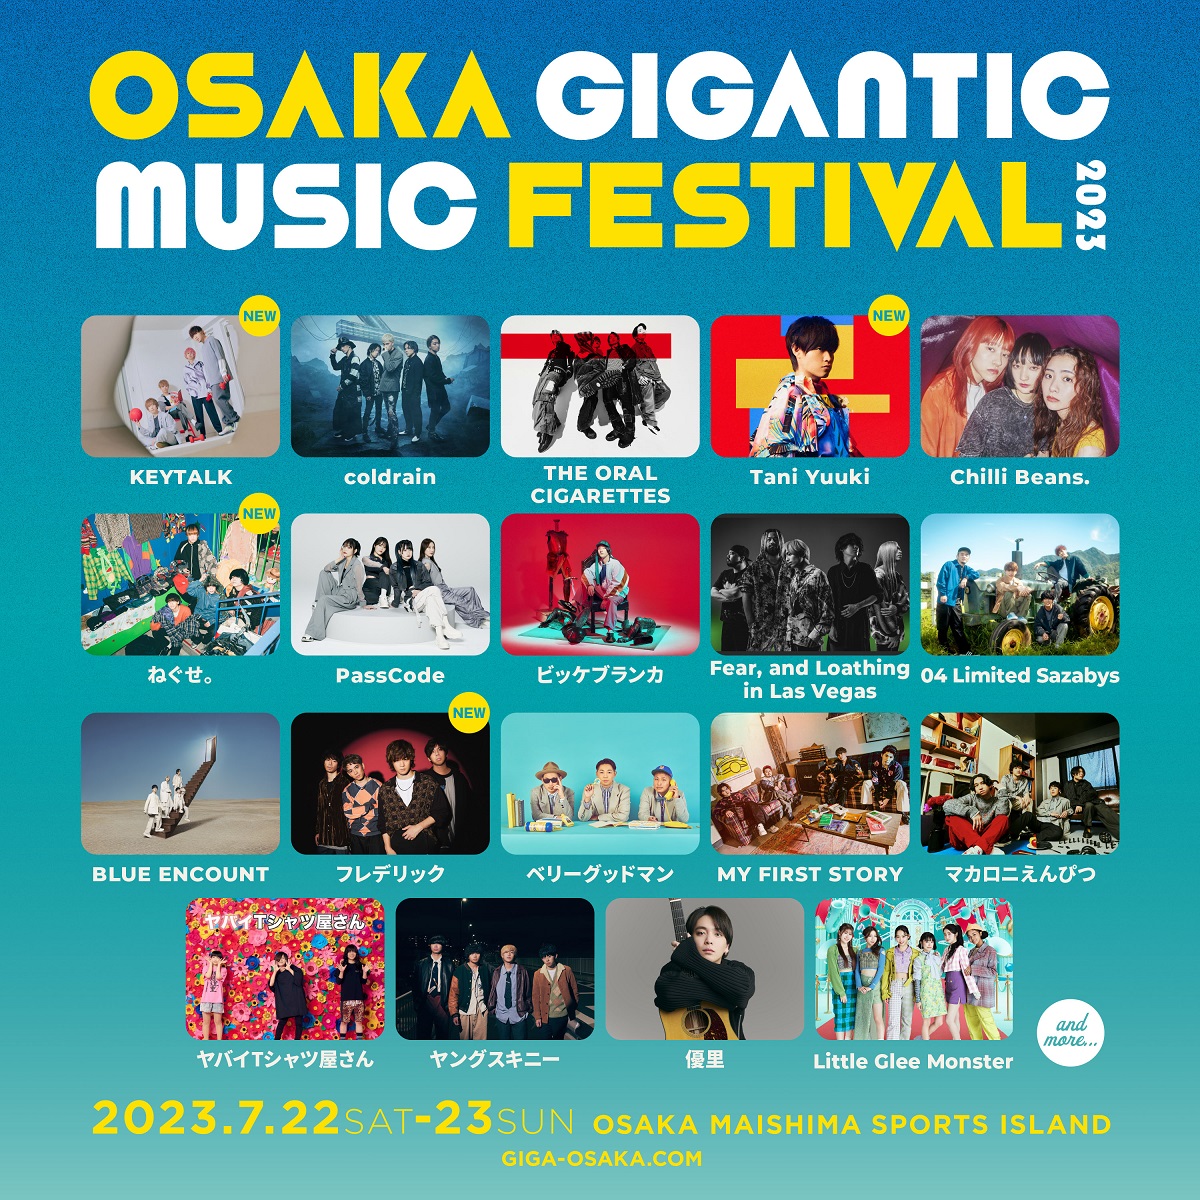 OSAKA GIGANTIC MUSIC FESTIVAL 2023